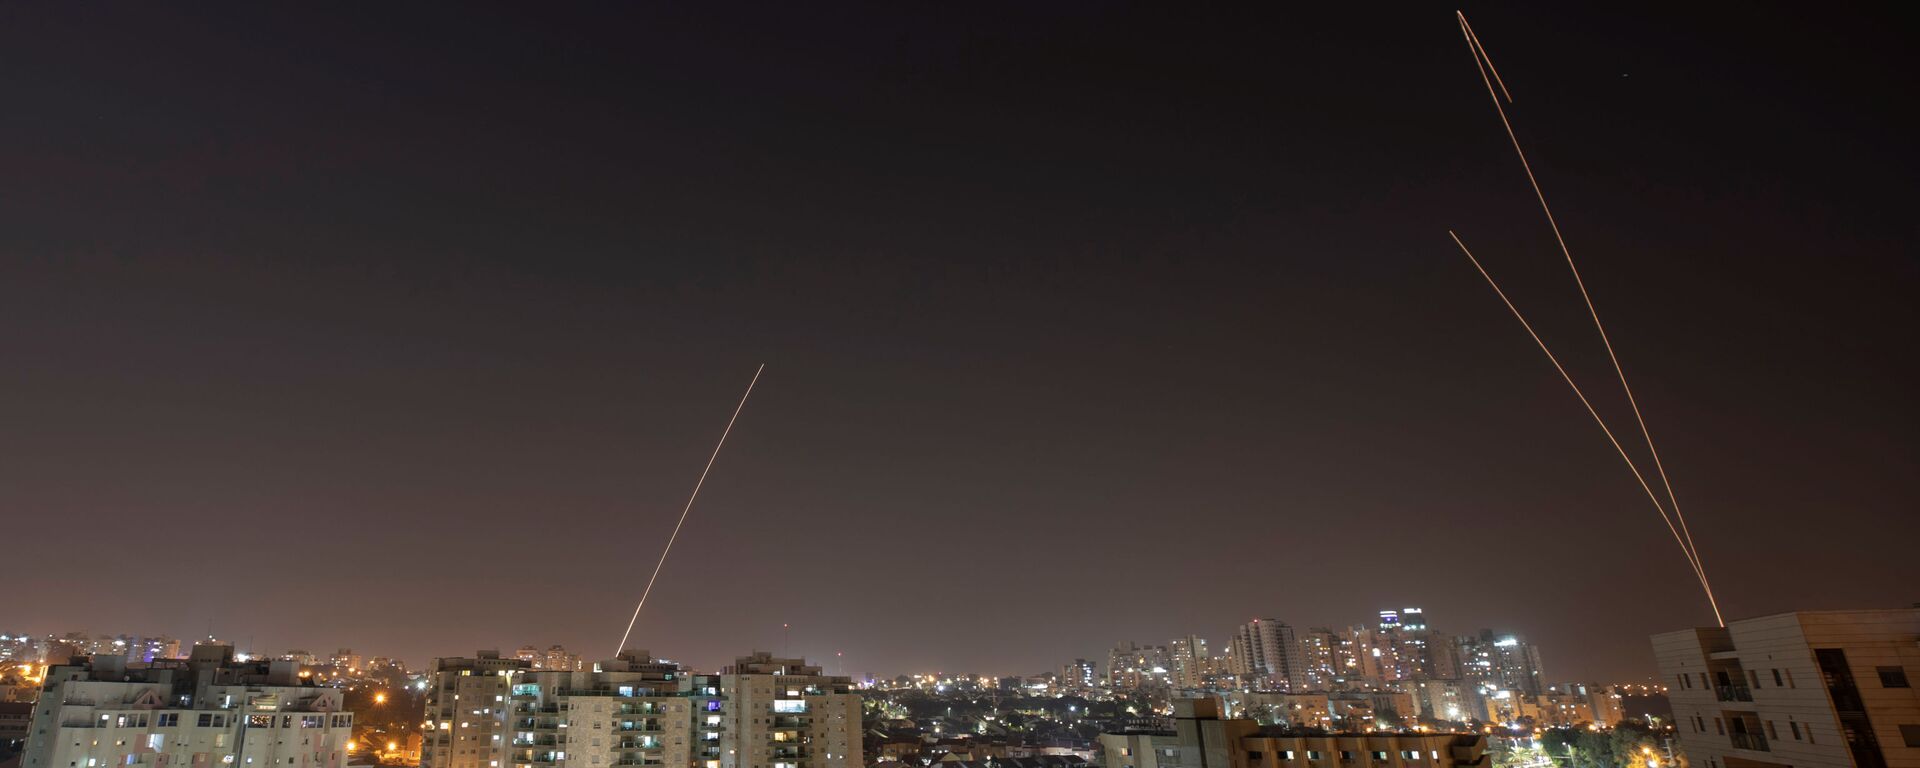 القبة الحديدية تطلق صواريخ اعتراضية أثناء إطلاق الصواريخ من غزة باتجاه إسرائيل بمدينة عسقلان - سبوتنيك عربي, 1920, 09.05.2021